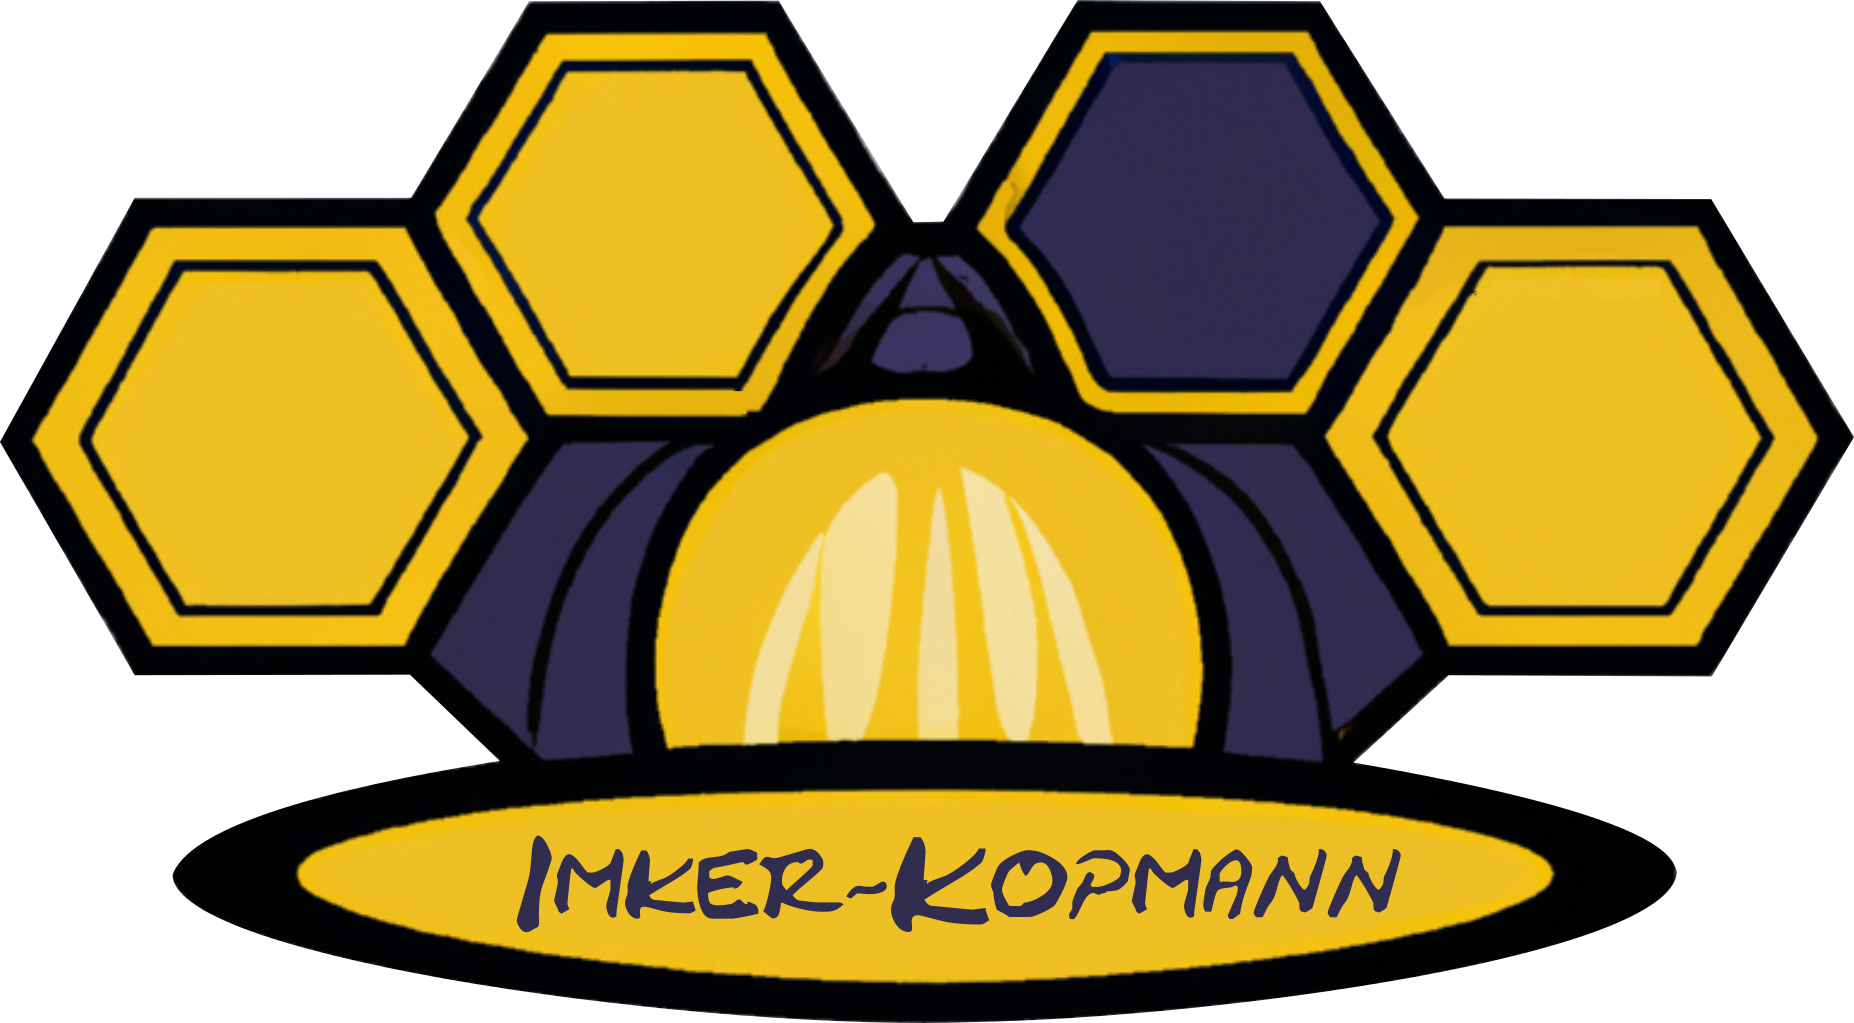 Imker-Kopmann logo